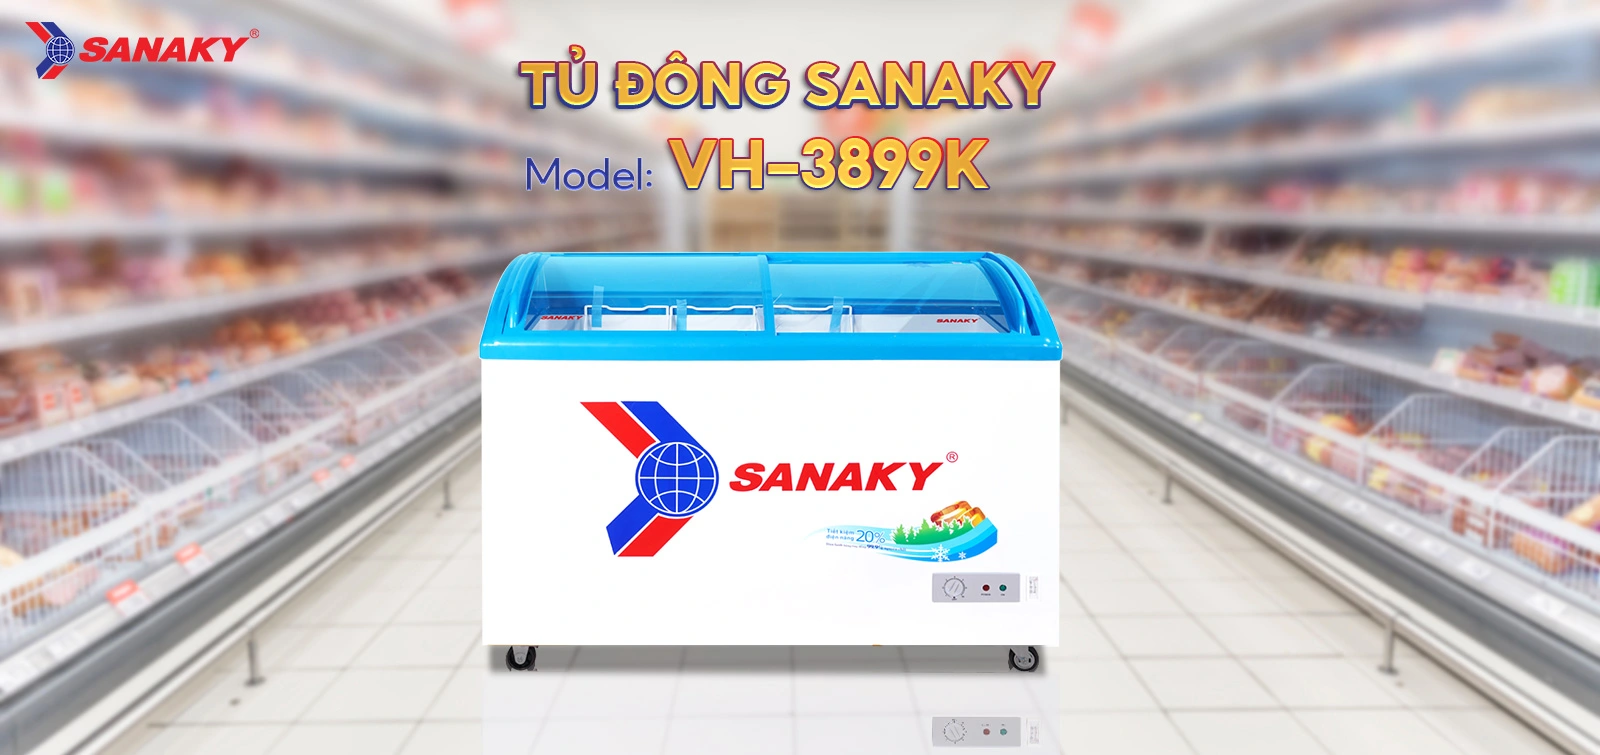 Tủ Đông Sanaky VH-3899K